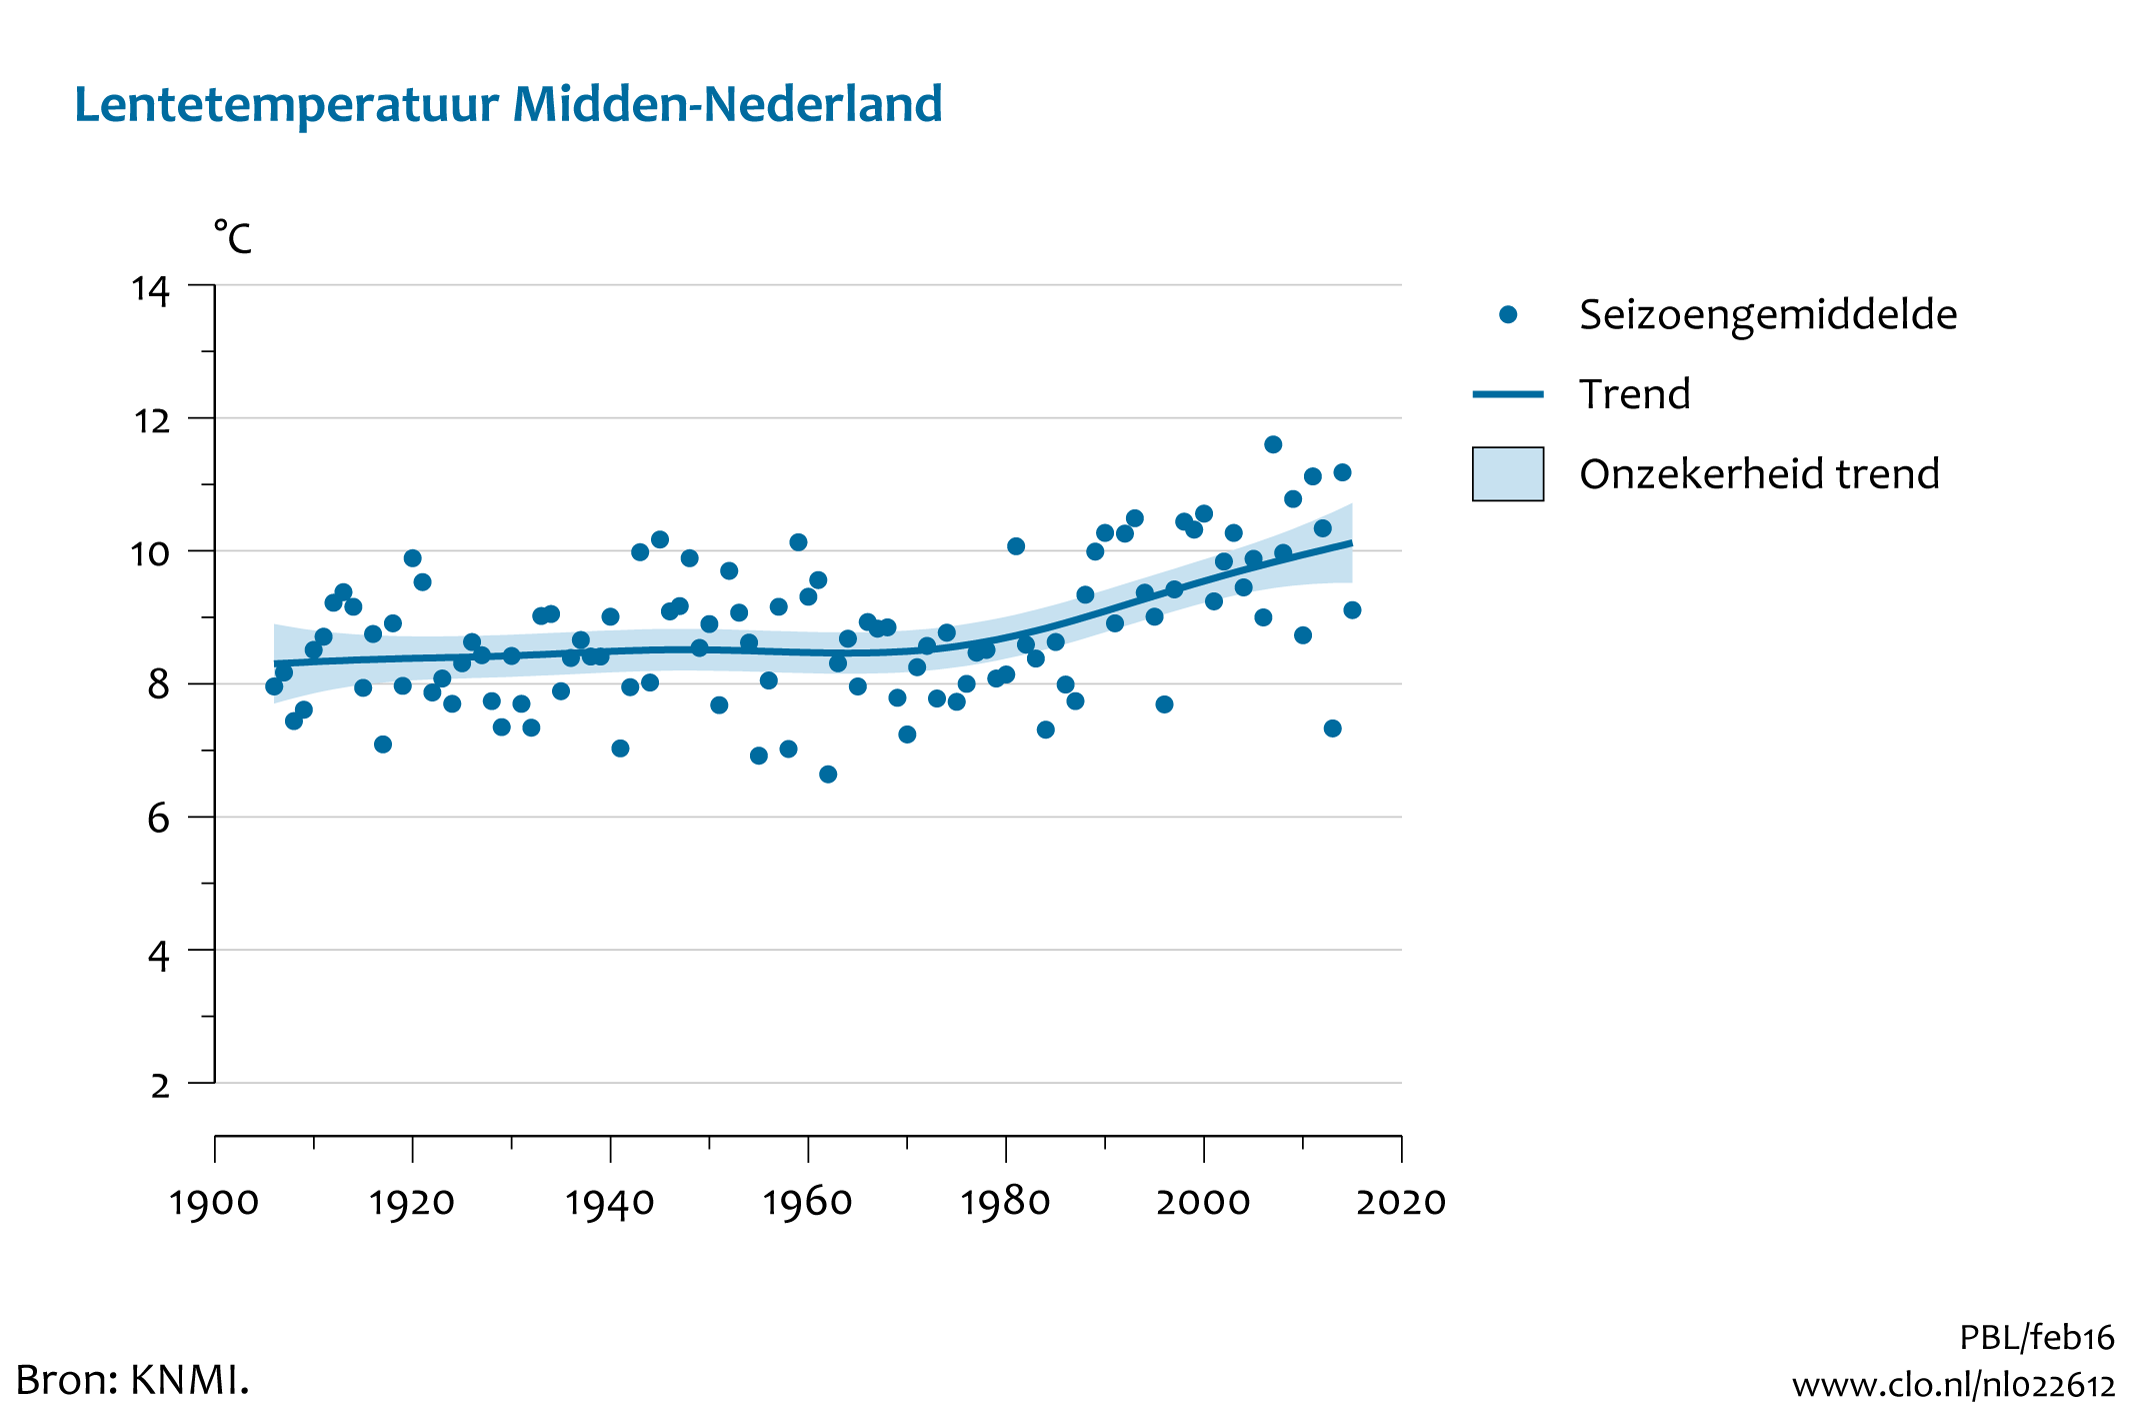 Figuur lente temperatuur midden Nederland. In de rest van de tekst wordt deze figuur uitgebreider uitgelegd.